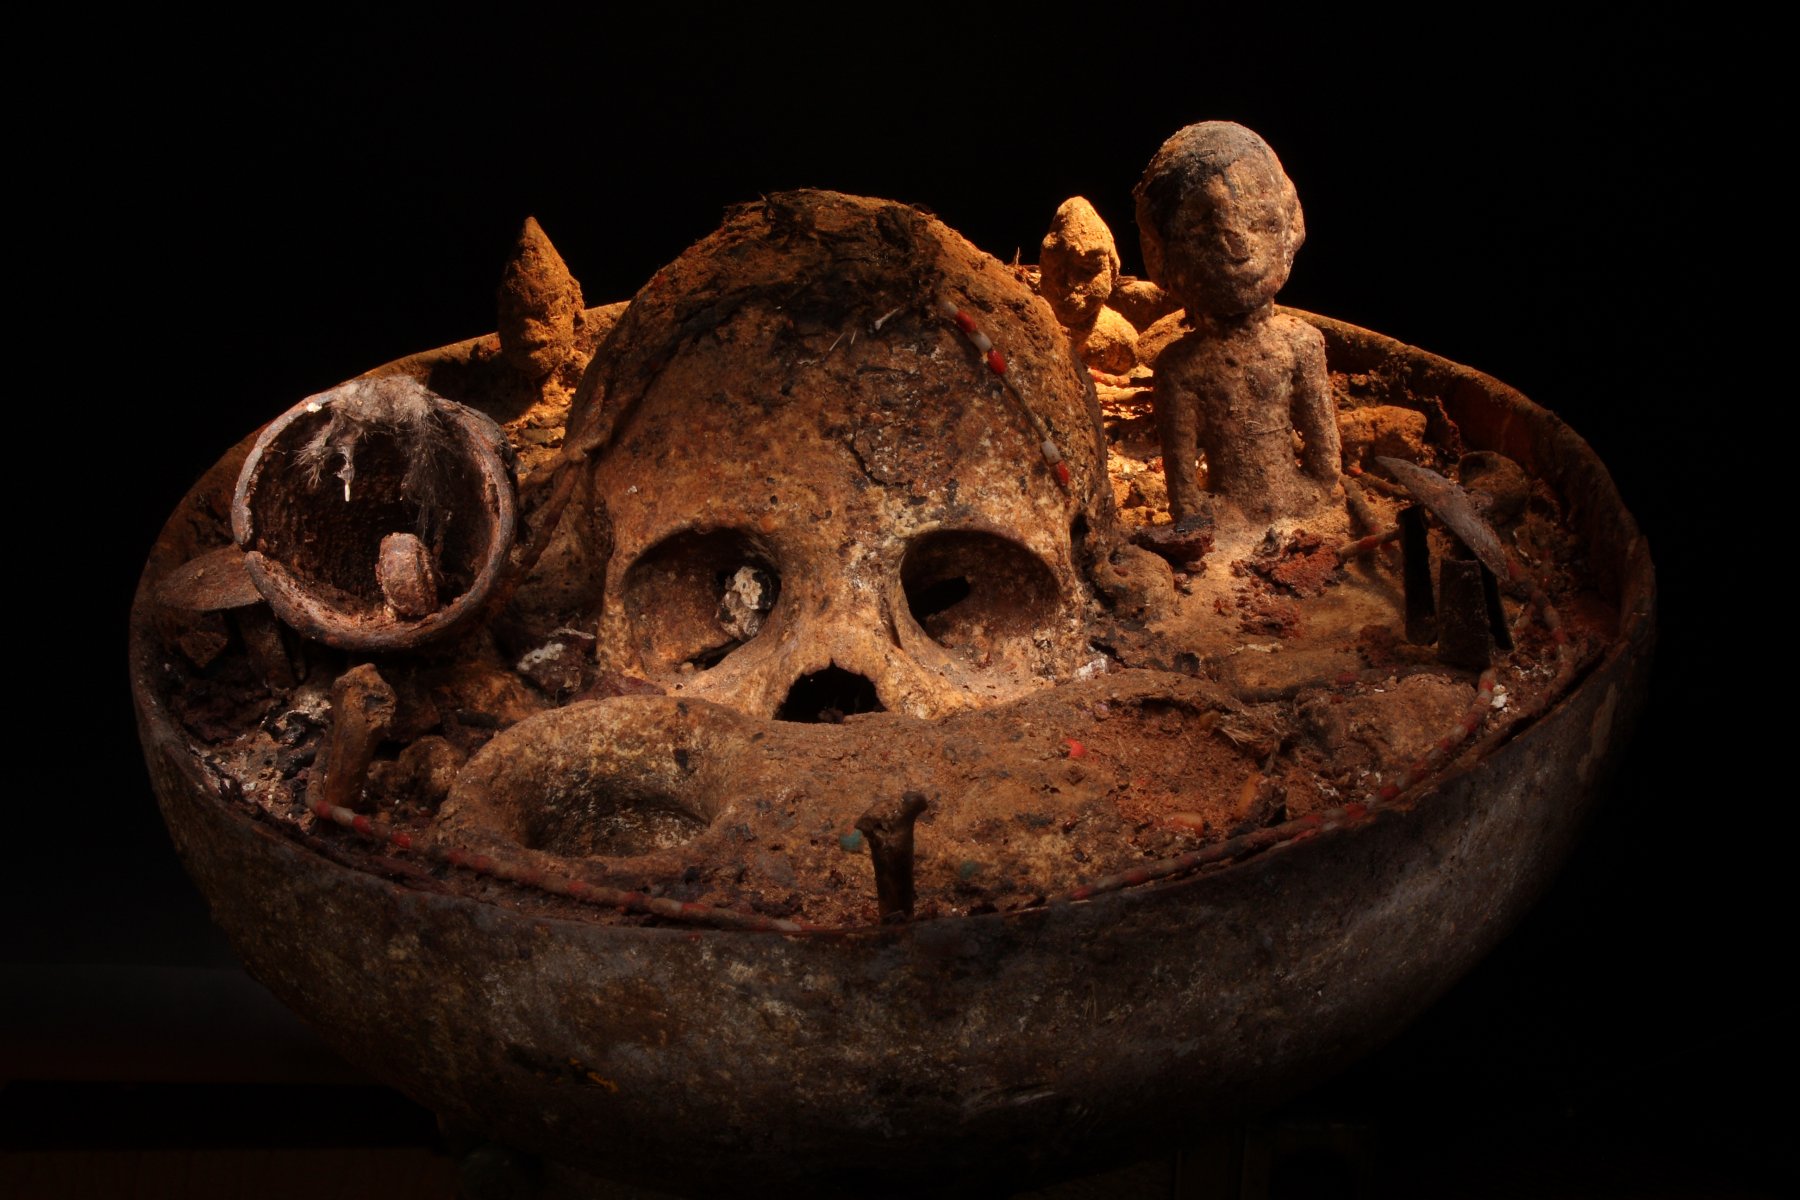 Vodun skull bowl
Fon ethnic, Benin